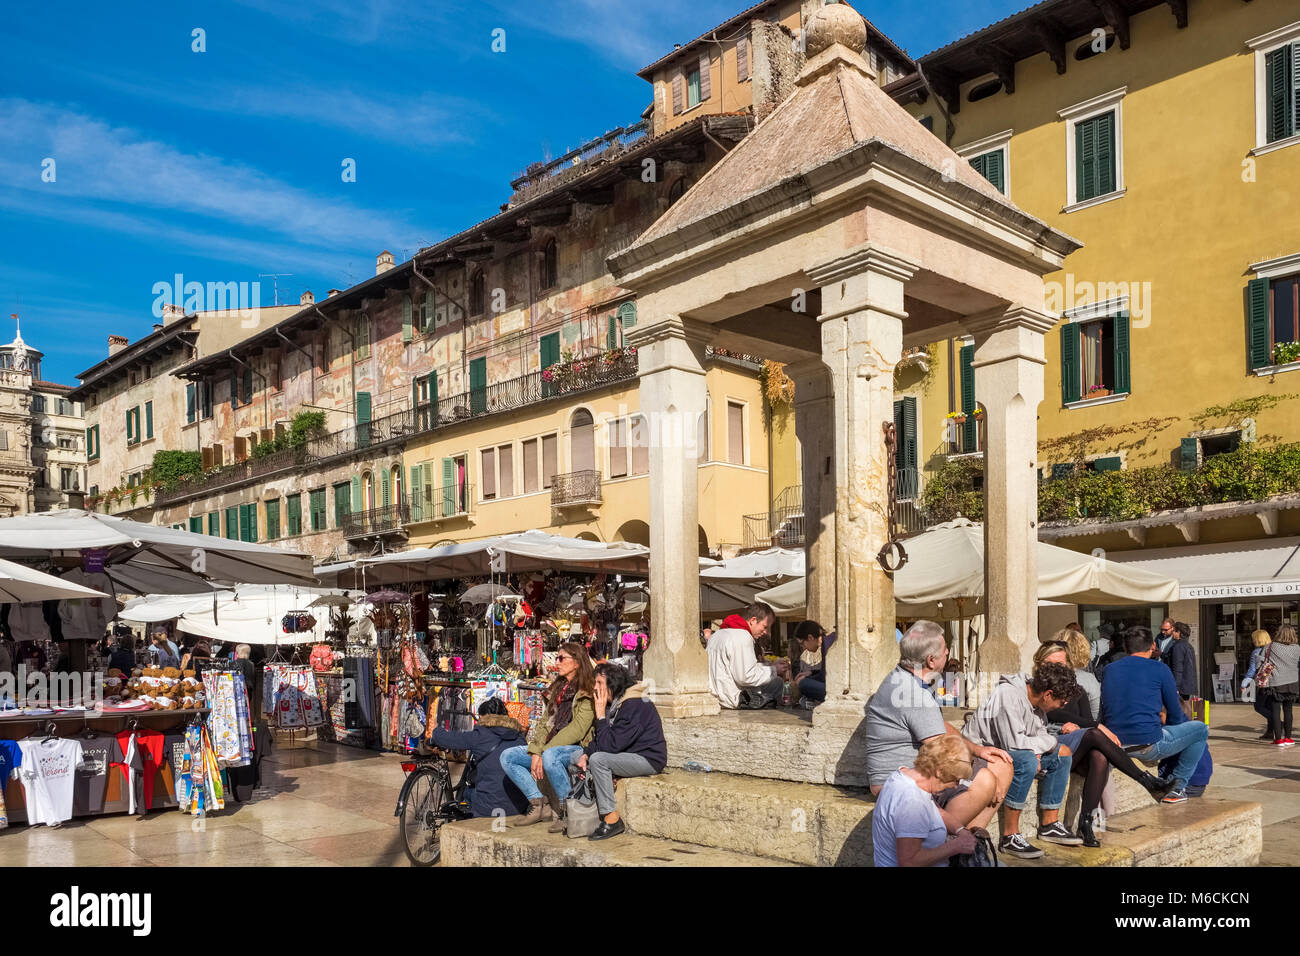 Mercado callejero en la Piazza delle Erbe, Verona, Italia Foto de stock